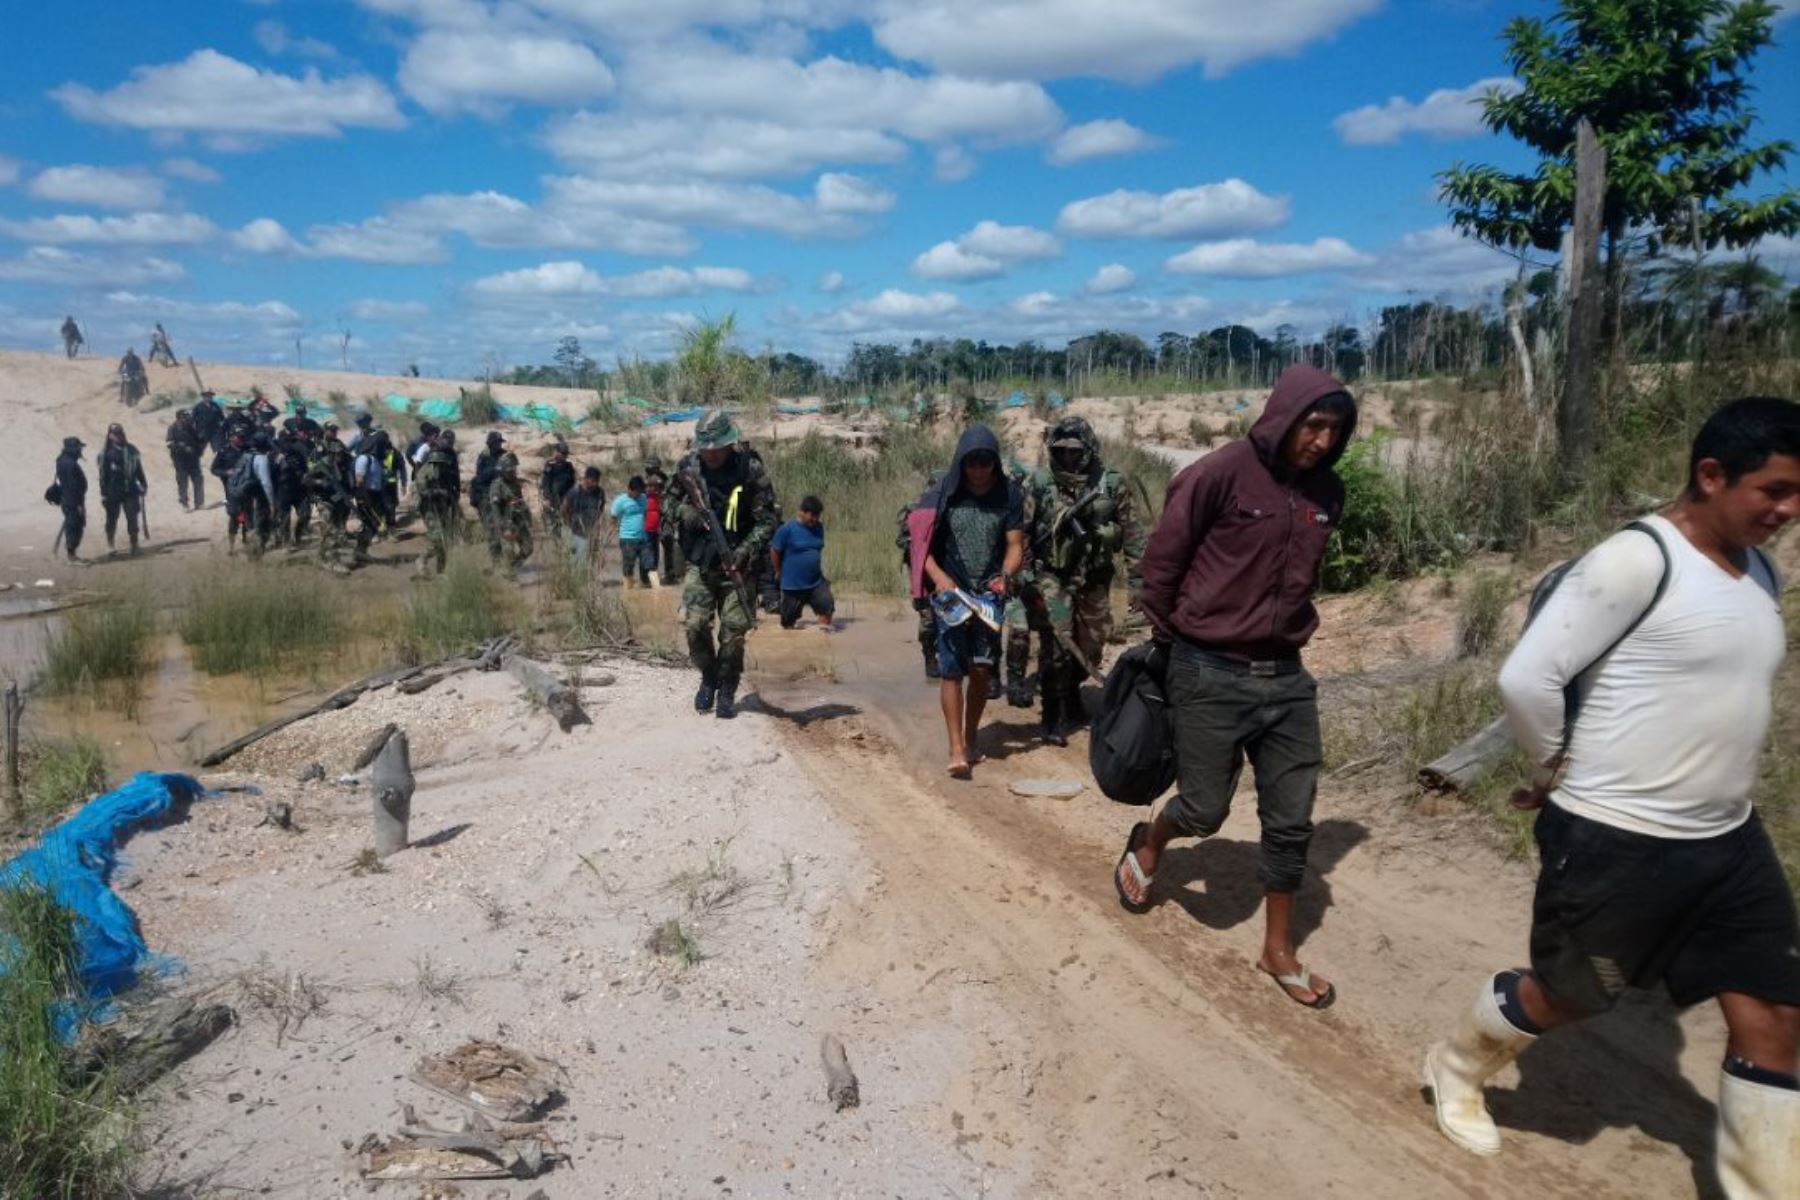 La Policía Nacional del Perú (PNP), en coordinación con el Ministerio Público, capturó a 22 personas que estaban ejerciendo la minería ilegal en la región Madre de Dios y destruyó material logístico usado para cometer este delito.